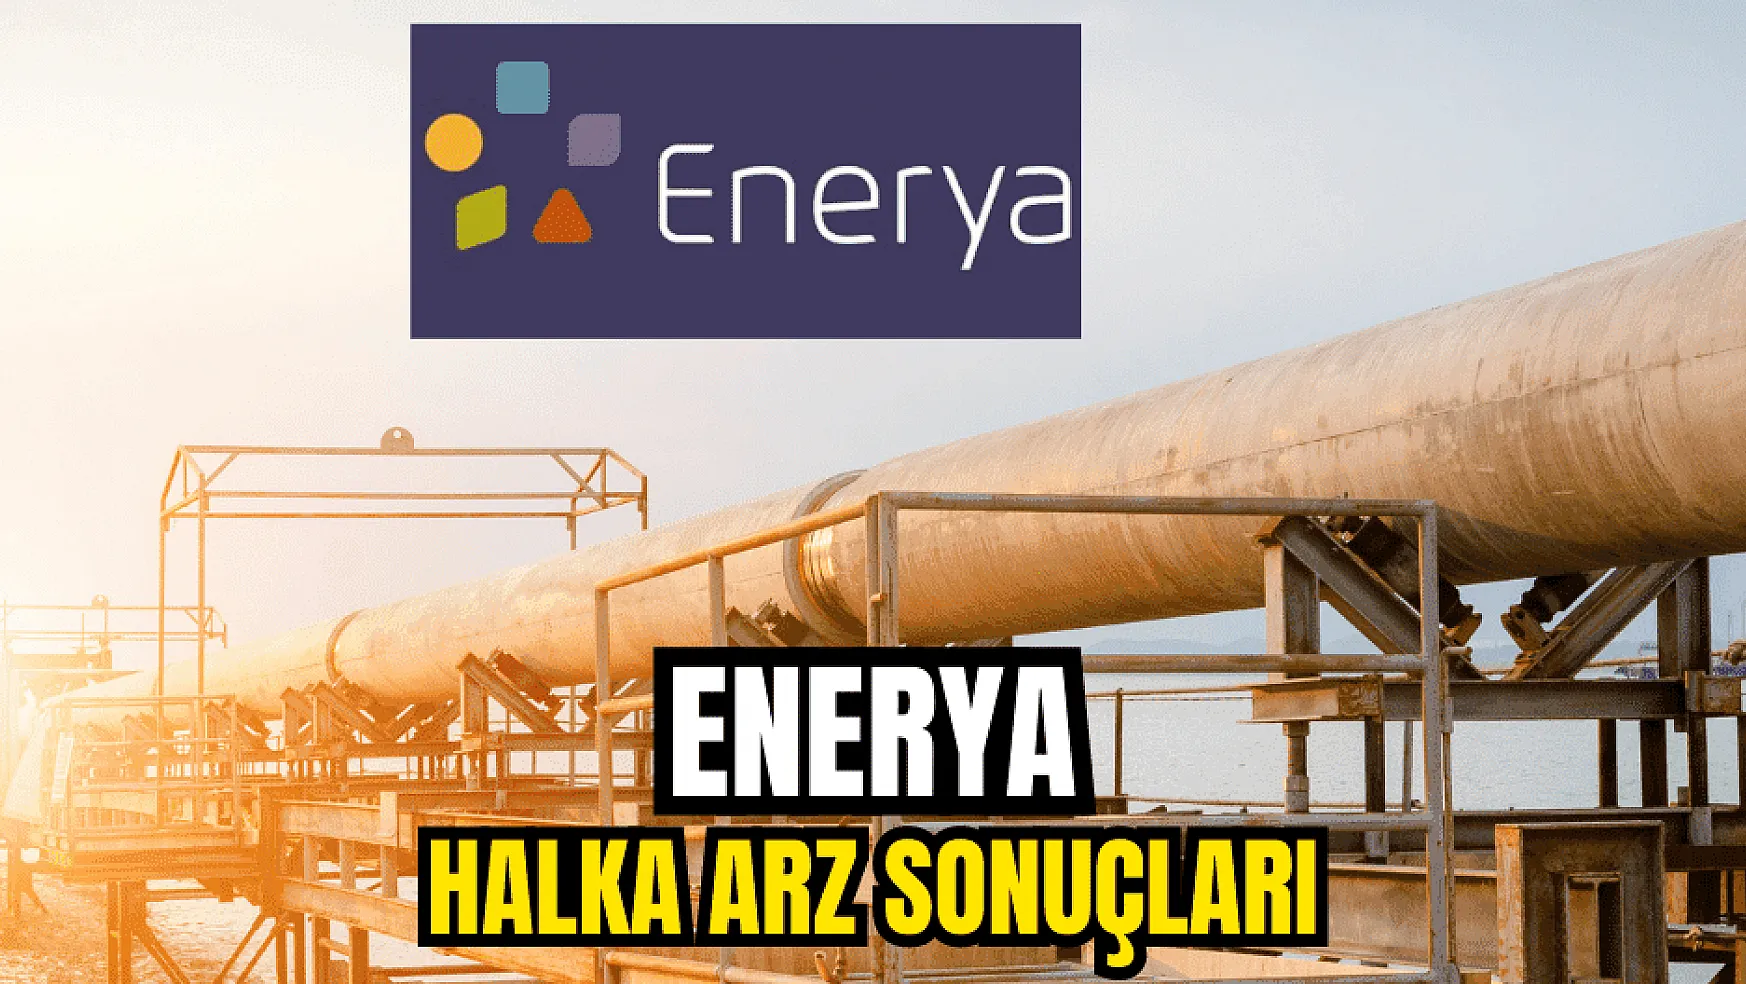 Enerya Enerji halka arzına, 2,8 milyon yatırımcı katıldı!